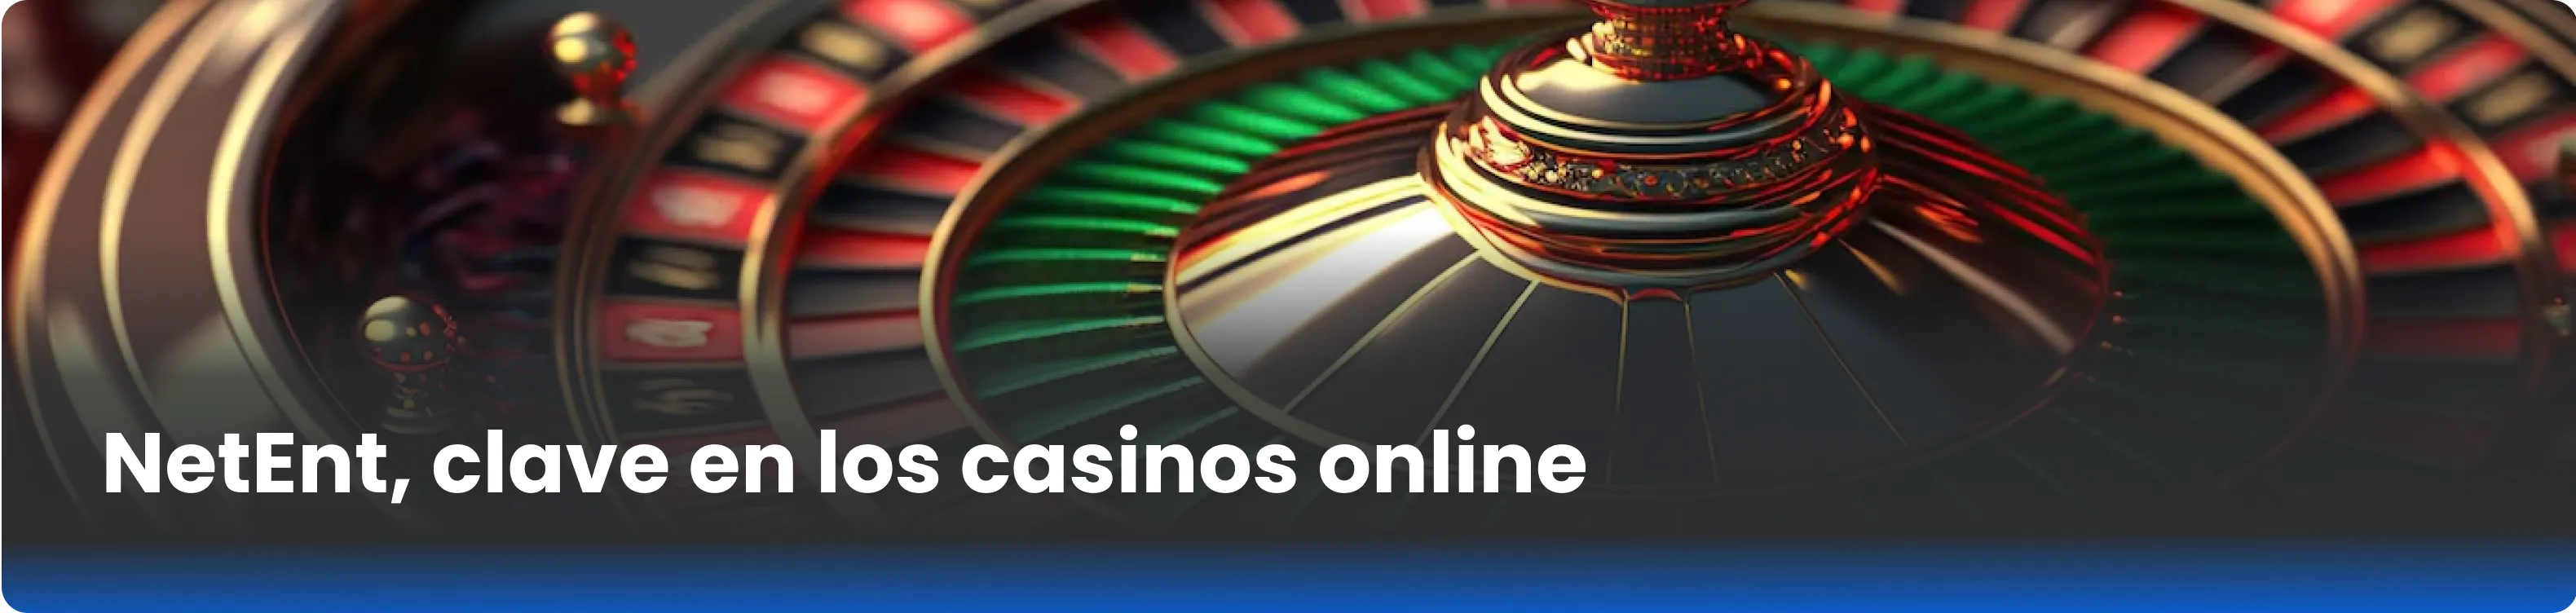 NetEnt, clave en los casinos online 